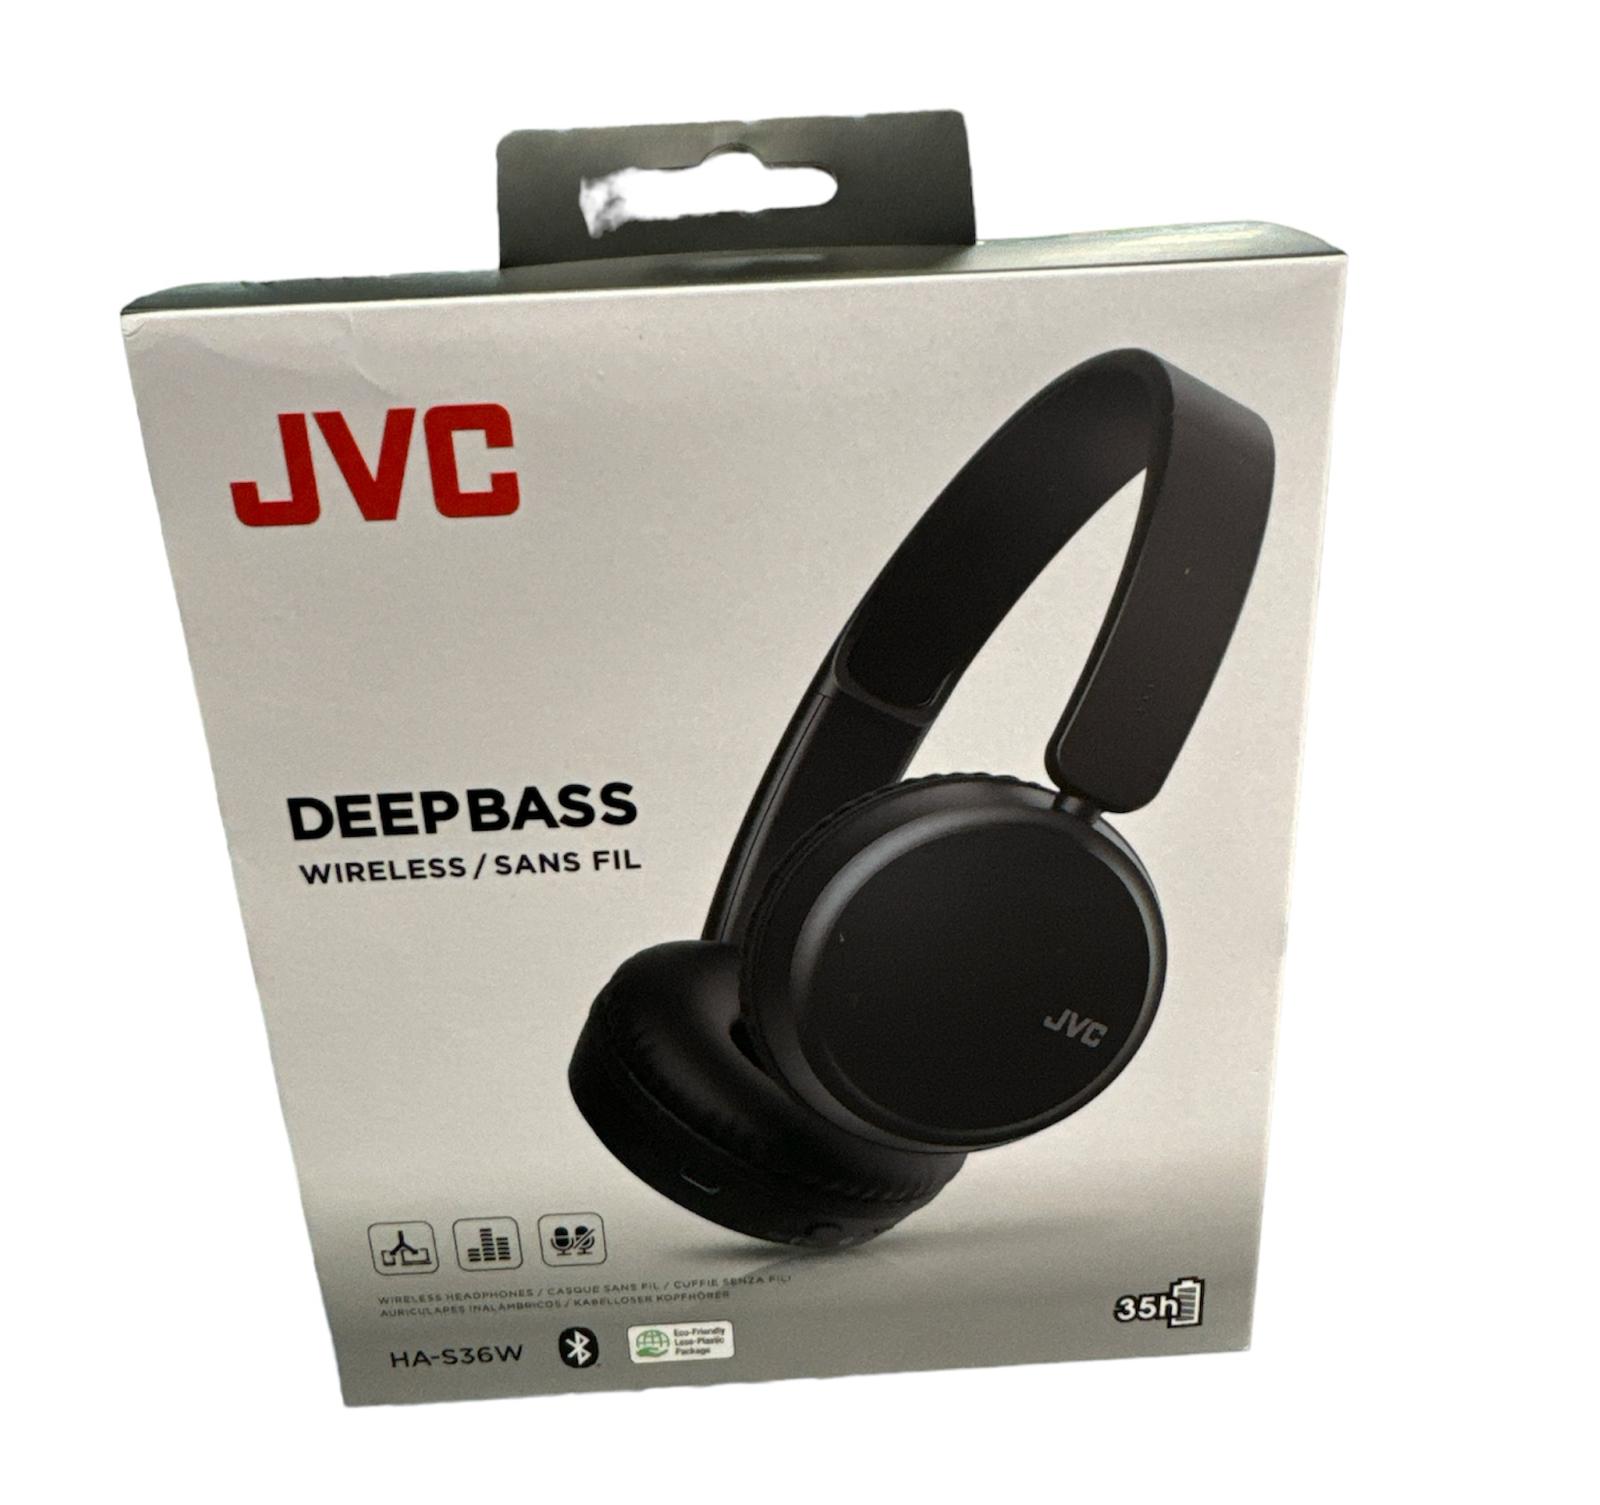 JVC Deep bass Wireless Headphones Brand New Sealed